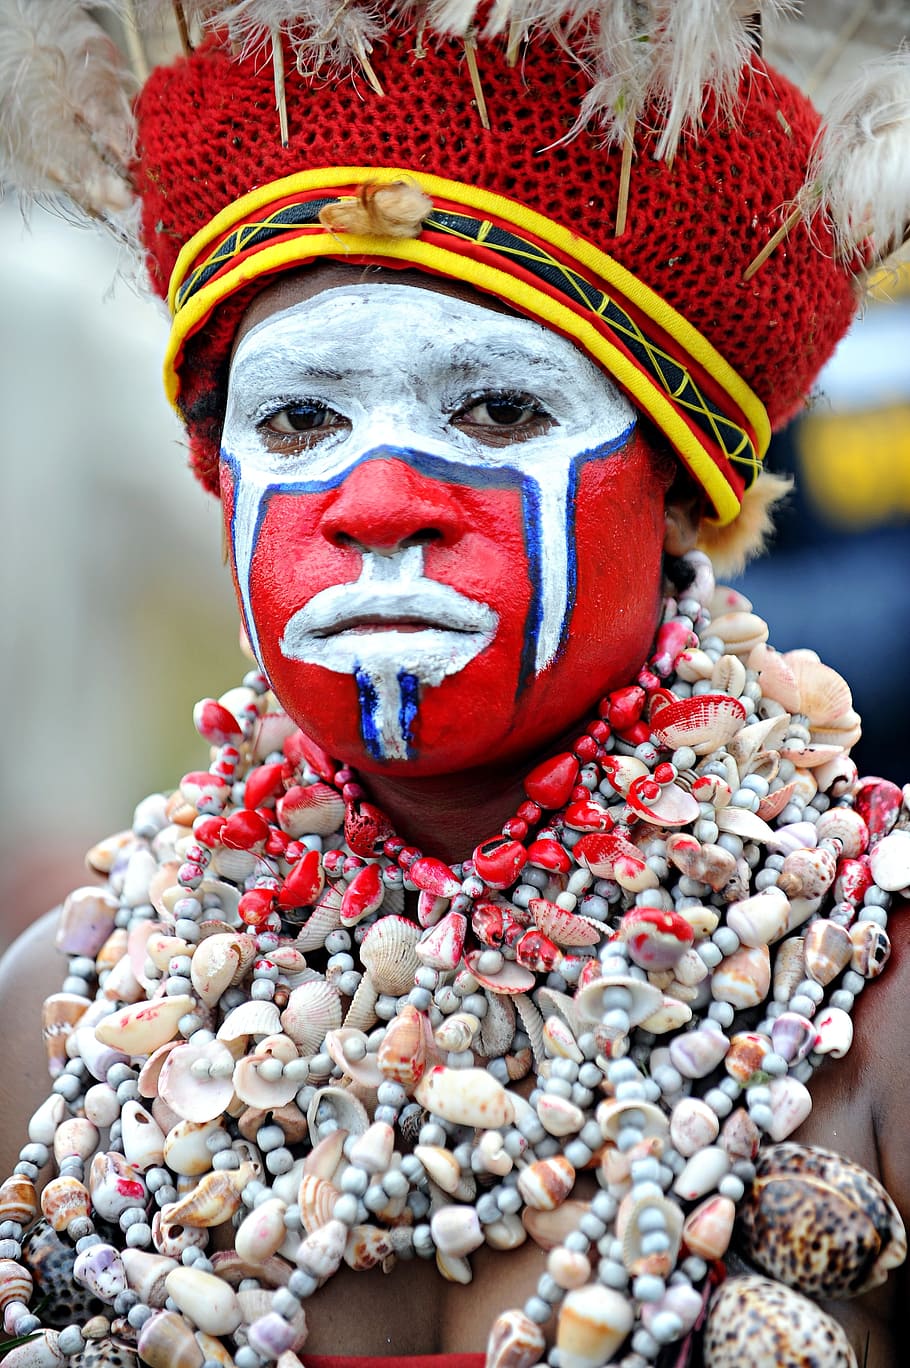 Goroka, Show, Papua, New, Guinea, goroka, show, papua, new, guinea, cultures, indigenous Culture, people